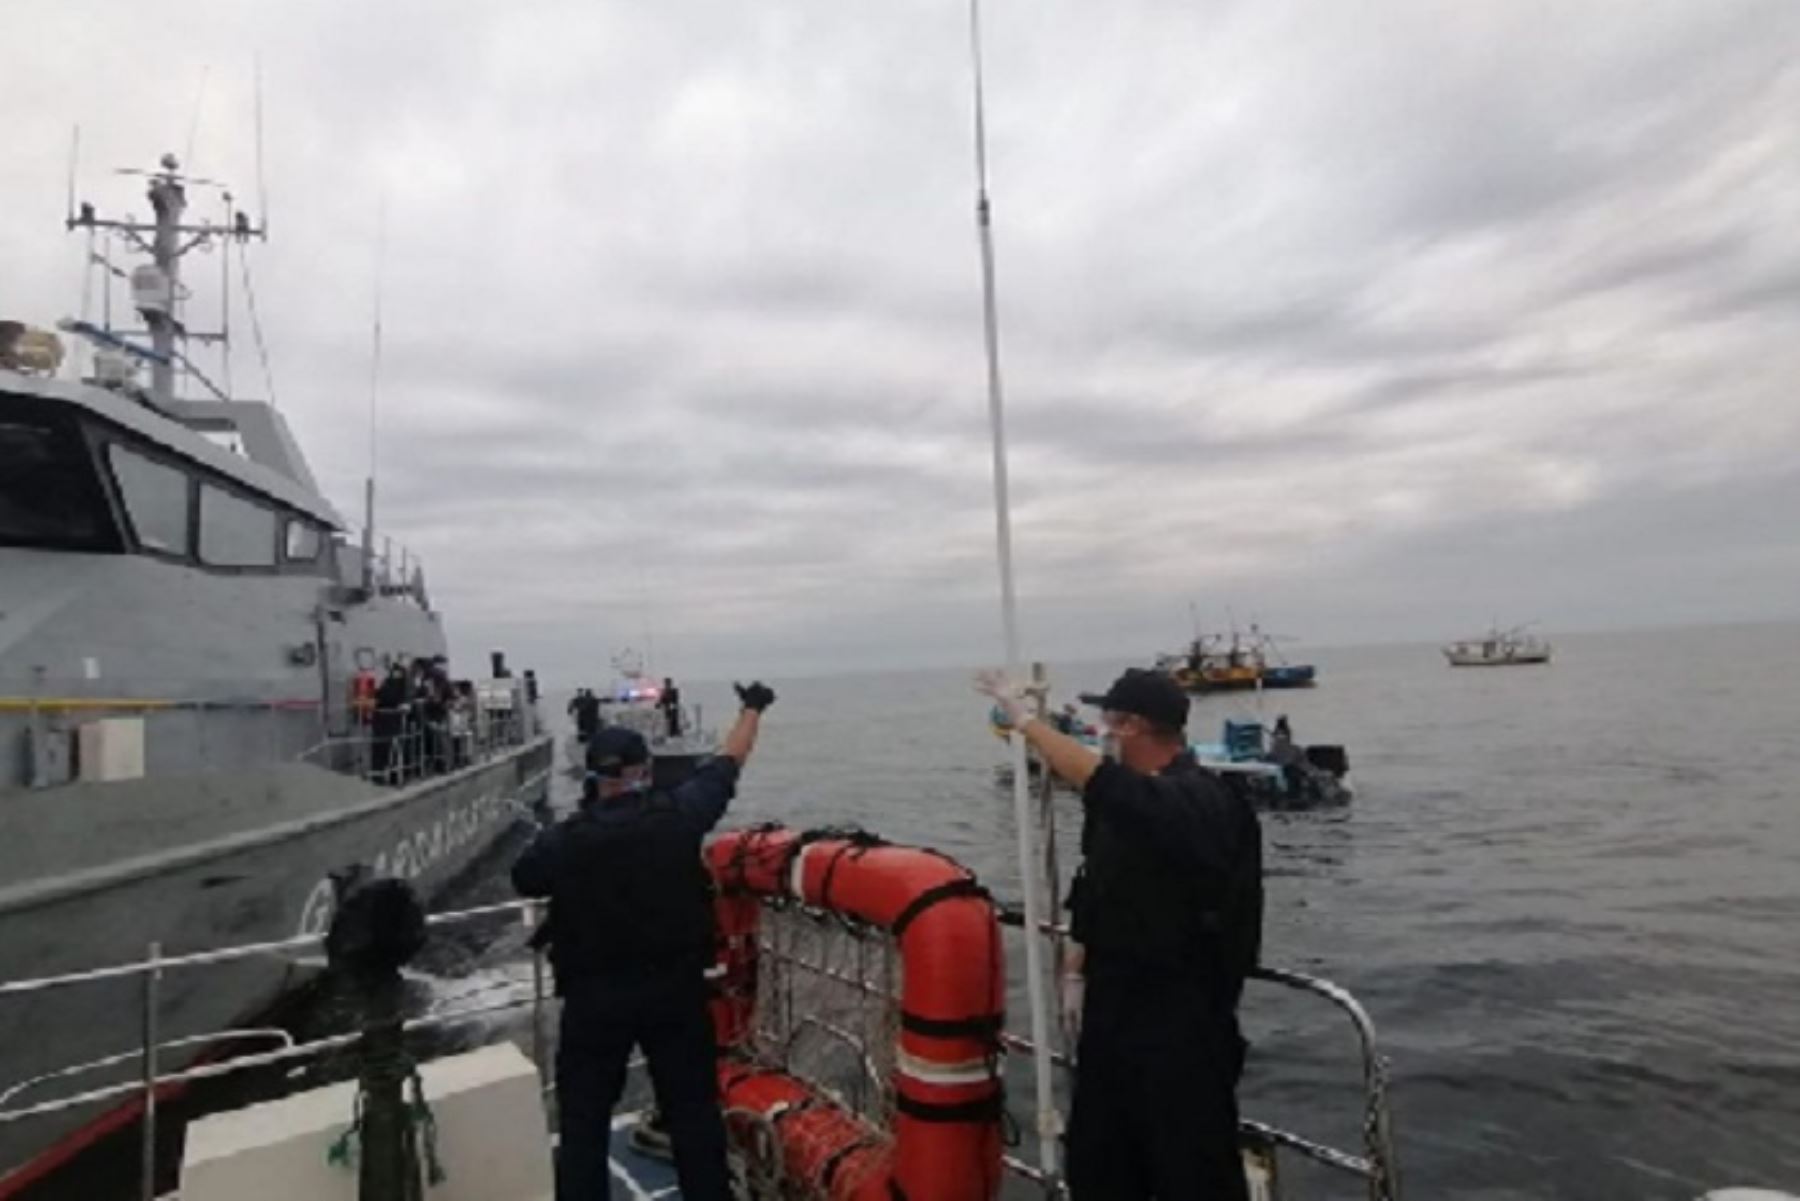 Las naves extranjeras intervenidas en aguas peruanas fueron entregadas en custodia a patrulleras de la Armada de Ecuador.